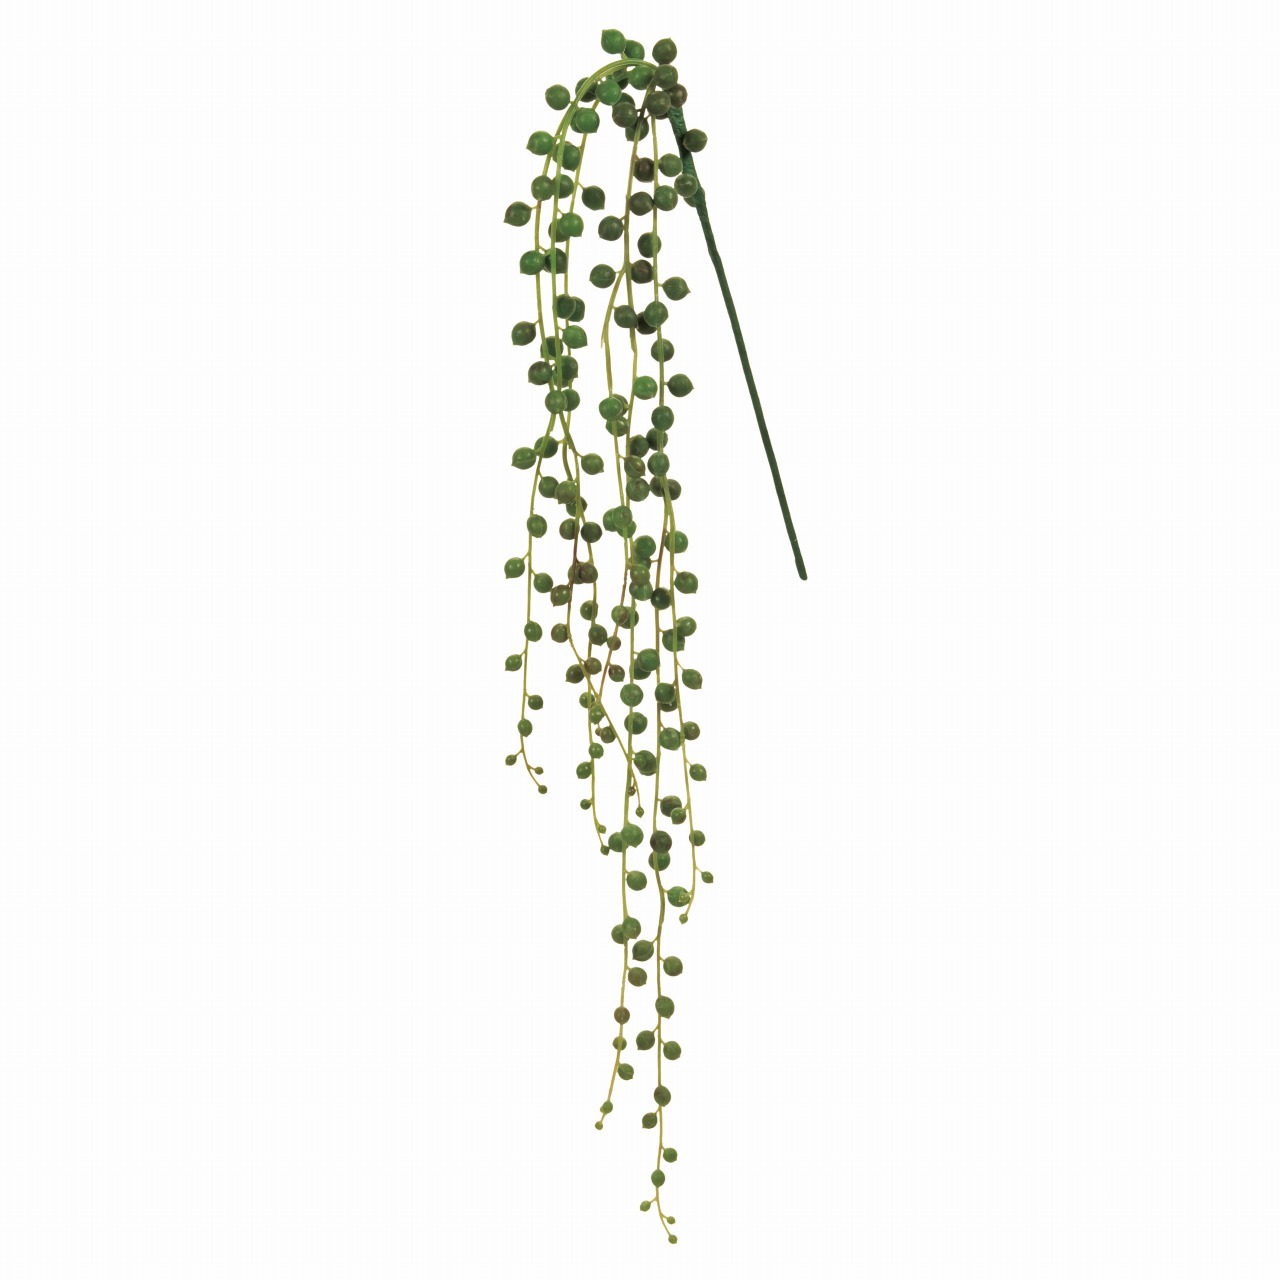 マイフラ 通販 Magiq リュクス グリーンネックレス ライトグリーン アーティフィシャルフラワー 造花 Fg 多肉植物 全長 約78cm 根本から先端まで ライトグリーン Magiq アーティフィシャルフラワー 造花 全国にmagiq 花器 花資材などをお届けします